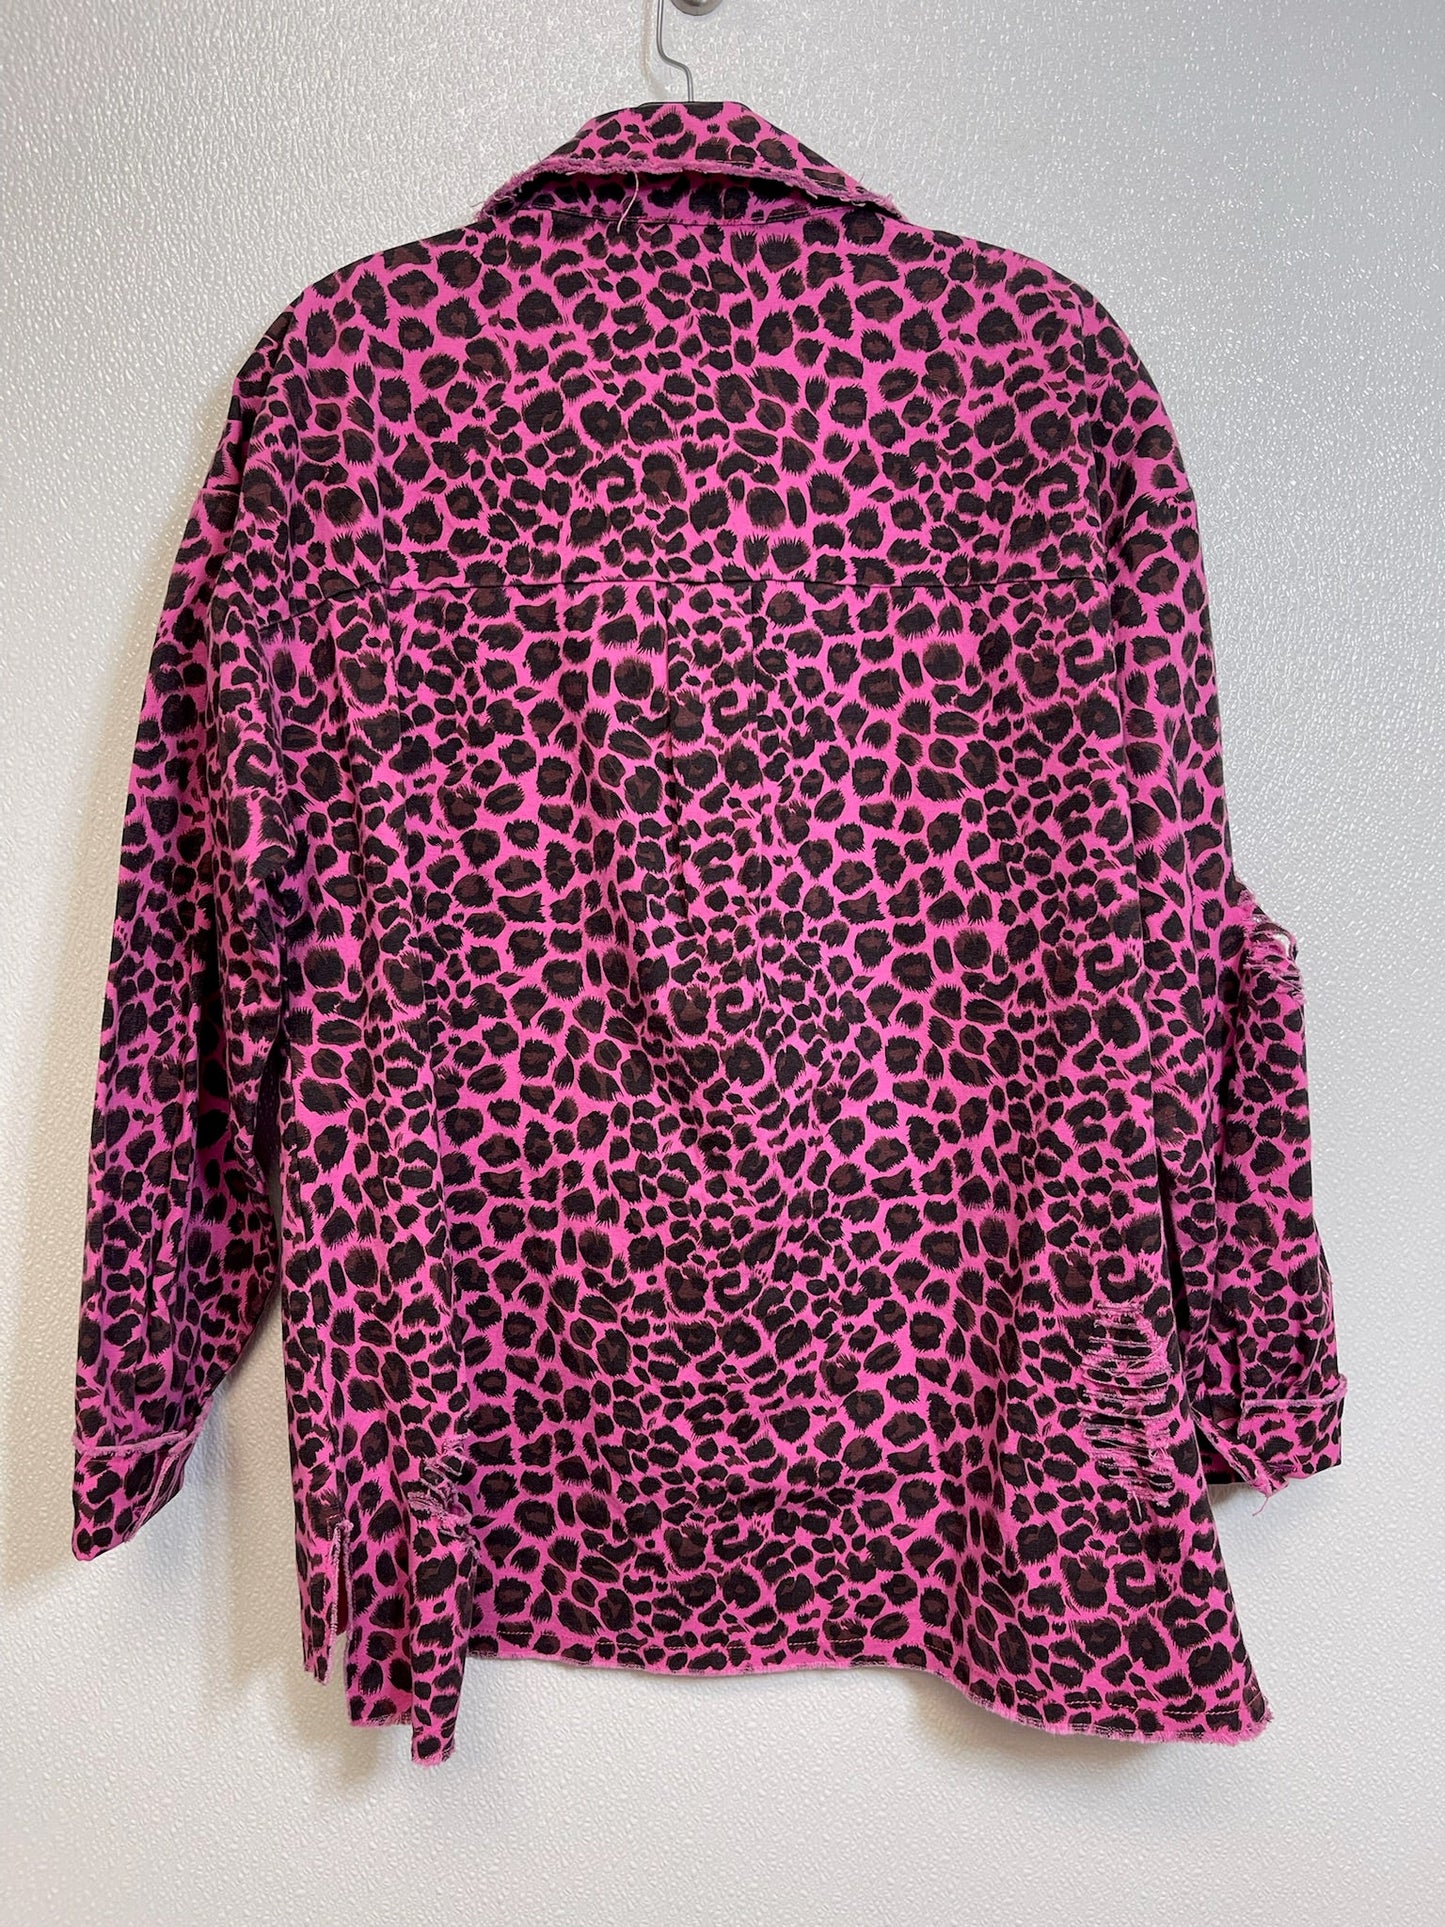 Leopard Print Jacket Denim Jodifl, Size S